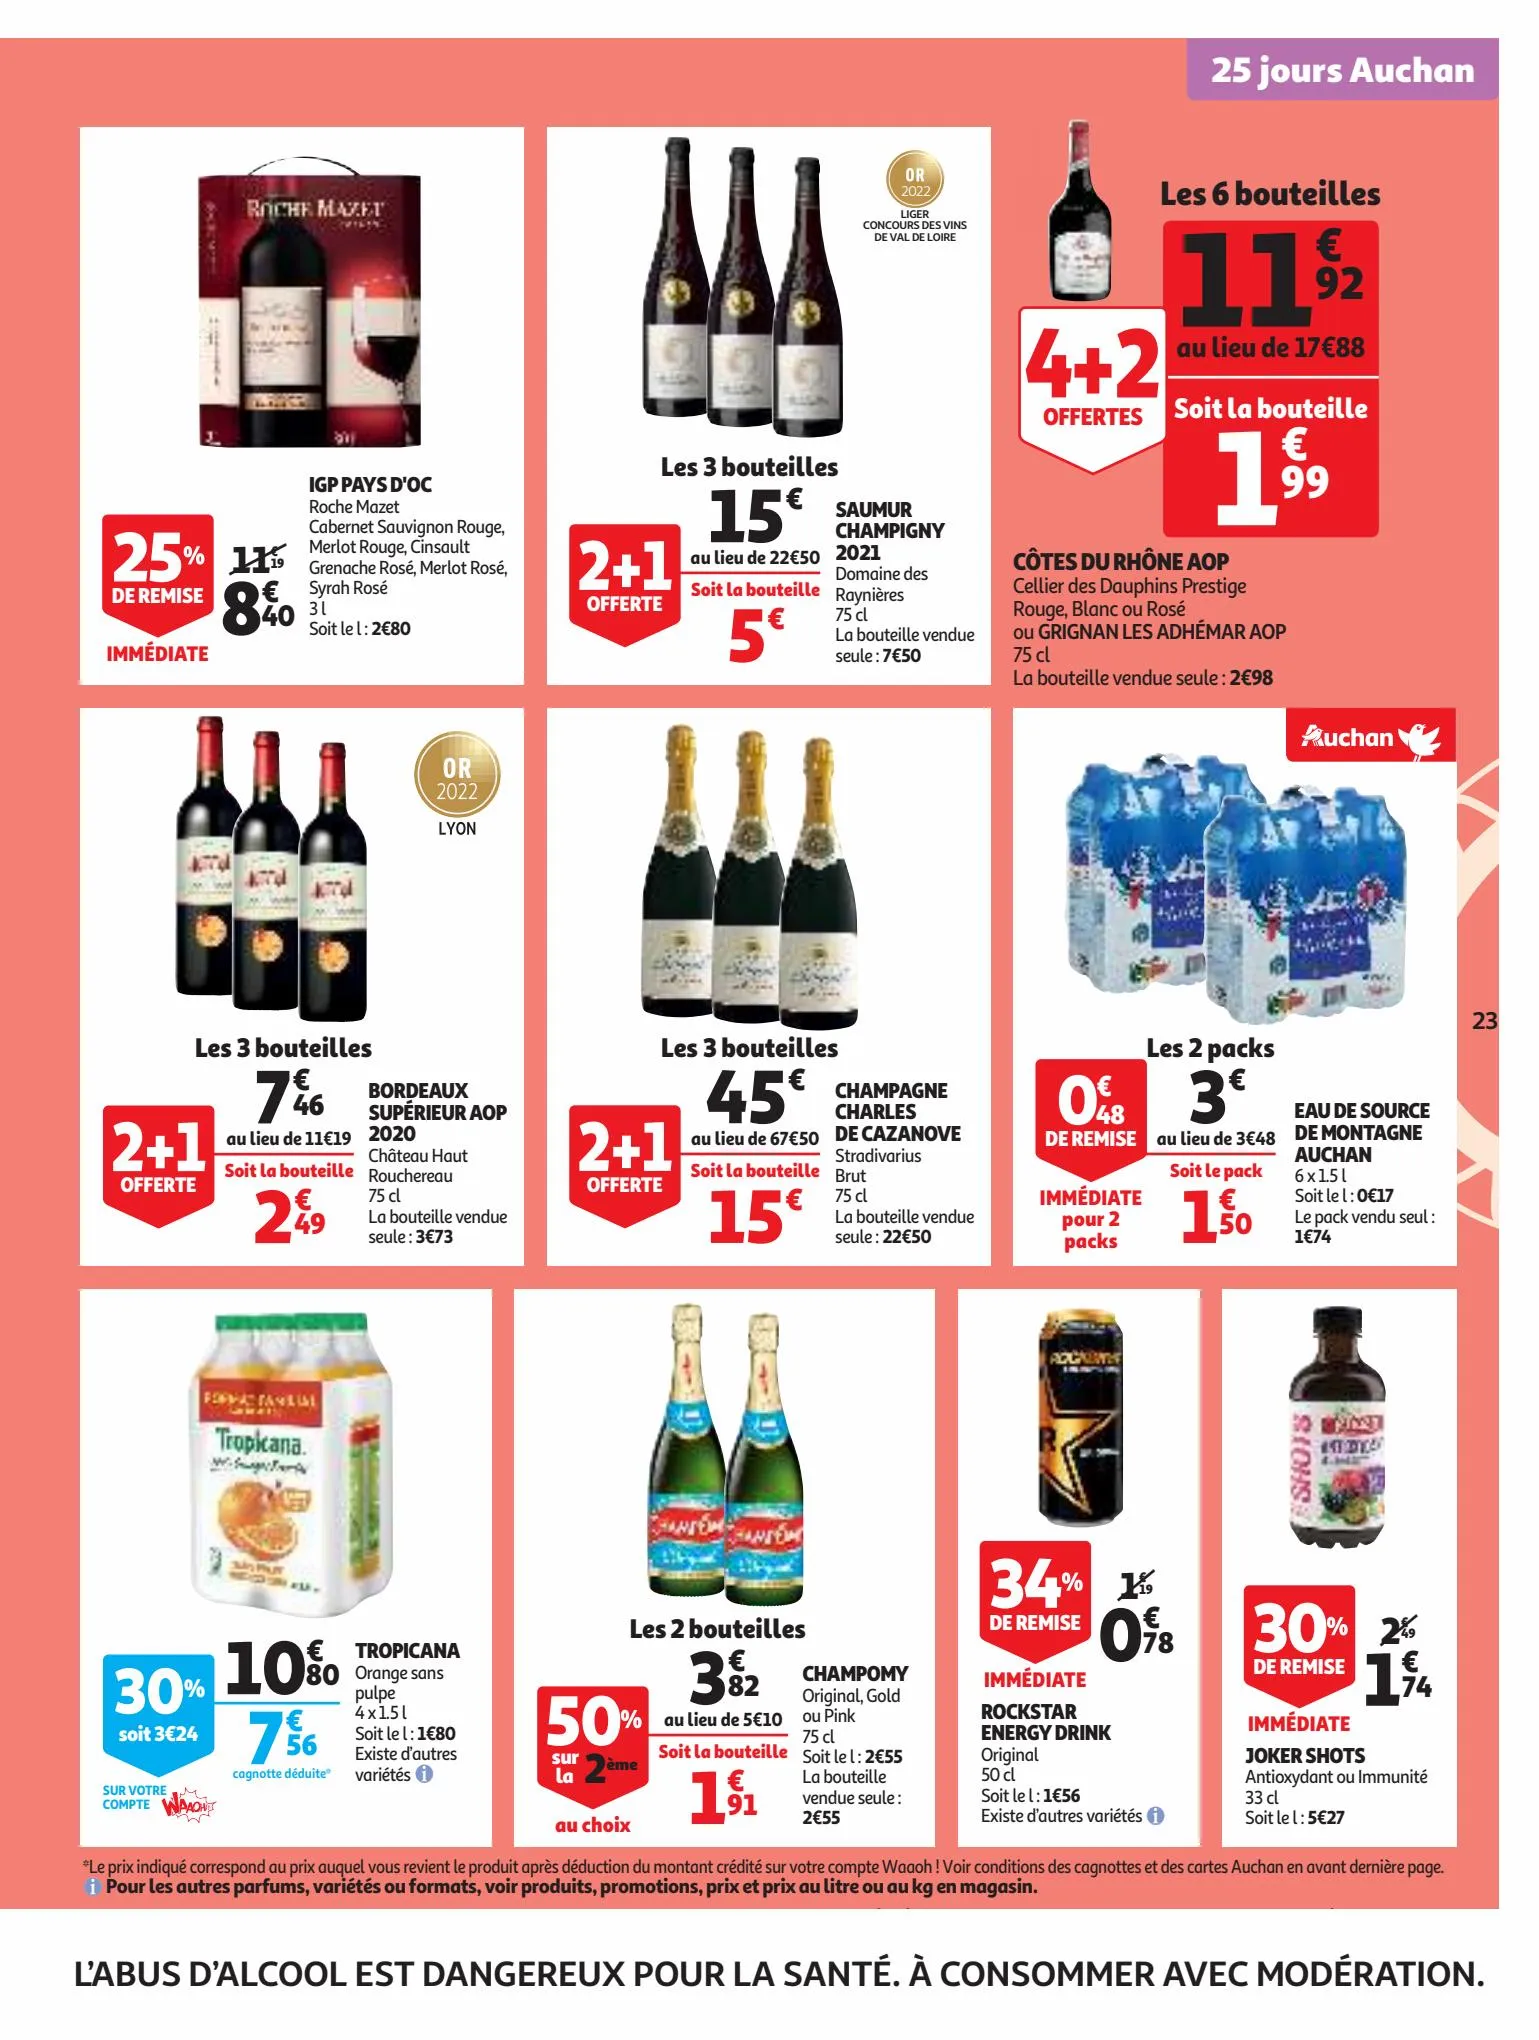 Catalogue 25 Jours Auchan, page 00023